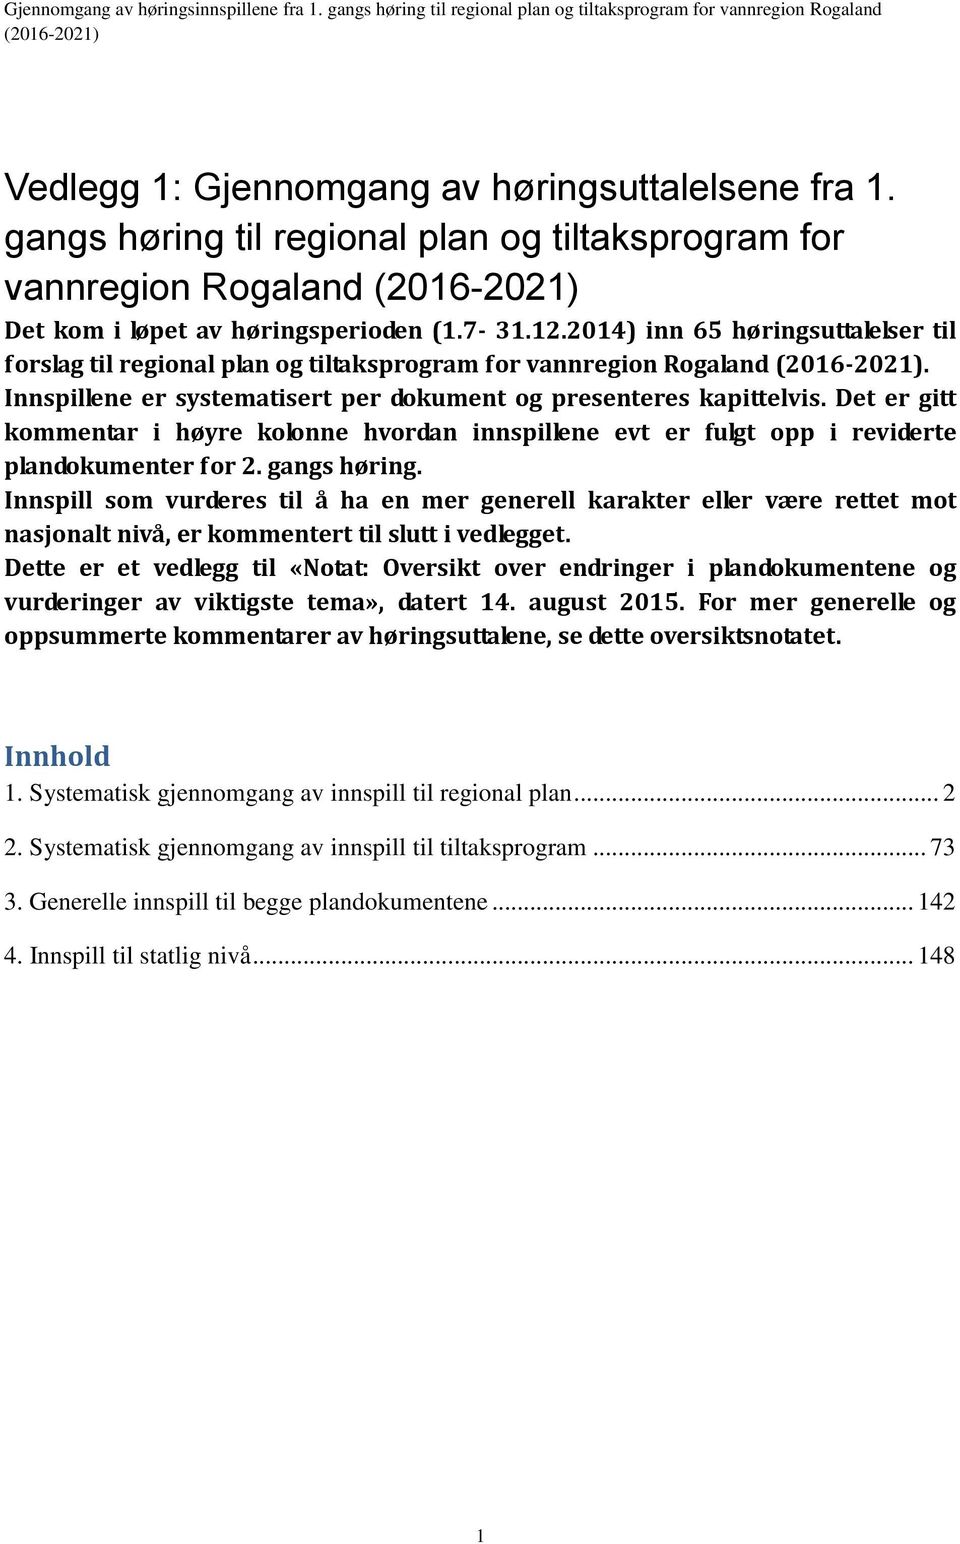 2014) inn 65 høringsuttalelser til forslag til regional plan og tiltaksprogram for vannregion Rogaland (2016-2021). Innspillene er systematisert per dokument og presenteres kapittelvis.